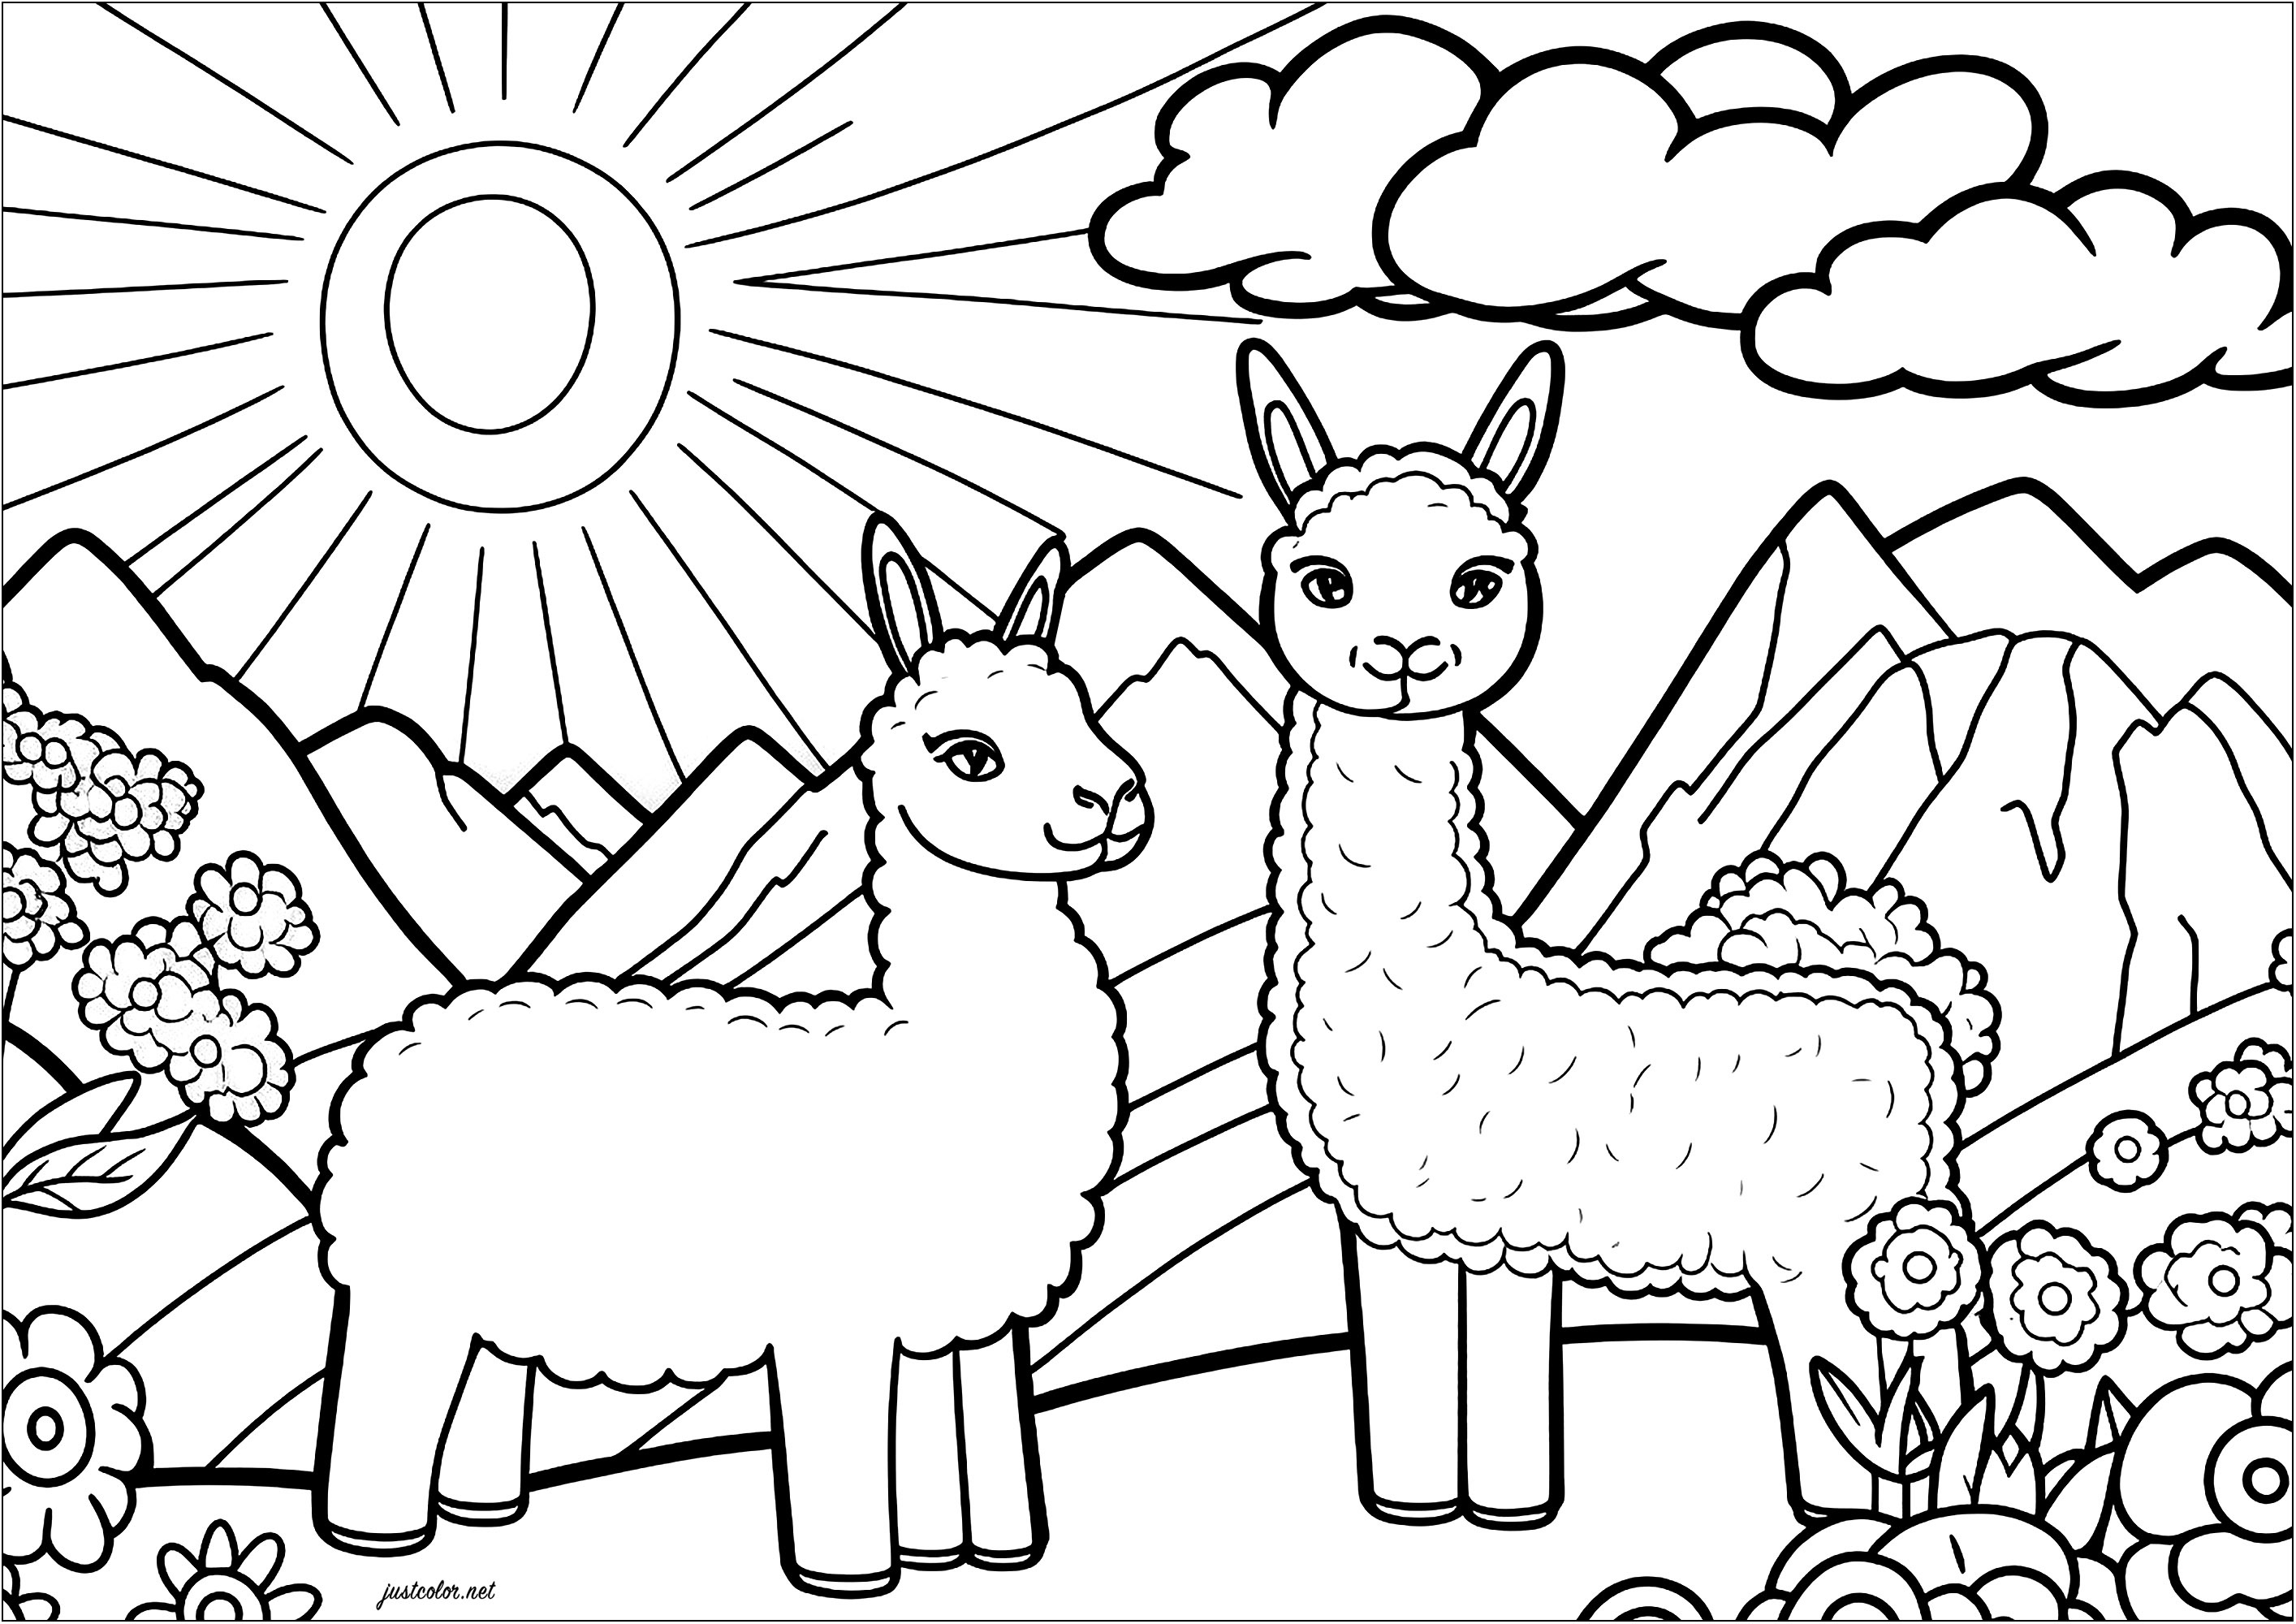 Coloriage de deux lamas rigolos. Deux lamas rigolos qui s'amusent dans un paysage montagneux. En arrière-plan, un grand soleils et quelques nuages. Coloriez également les jolies fleurs qui complètent ce beau dessin